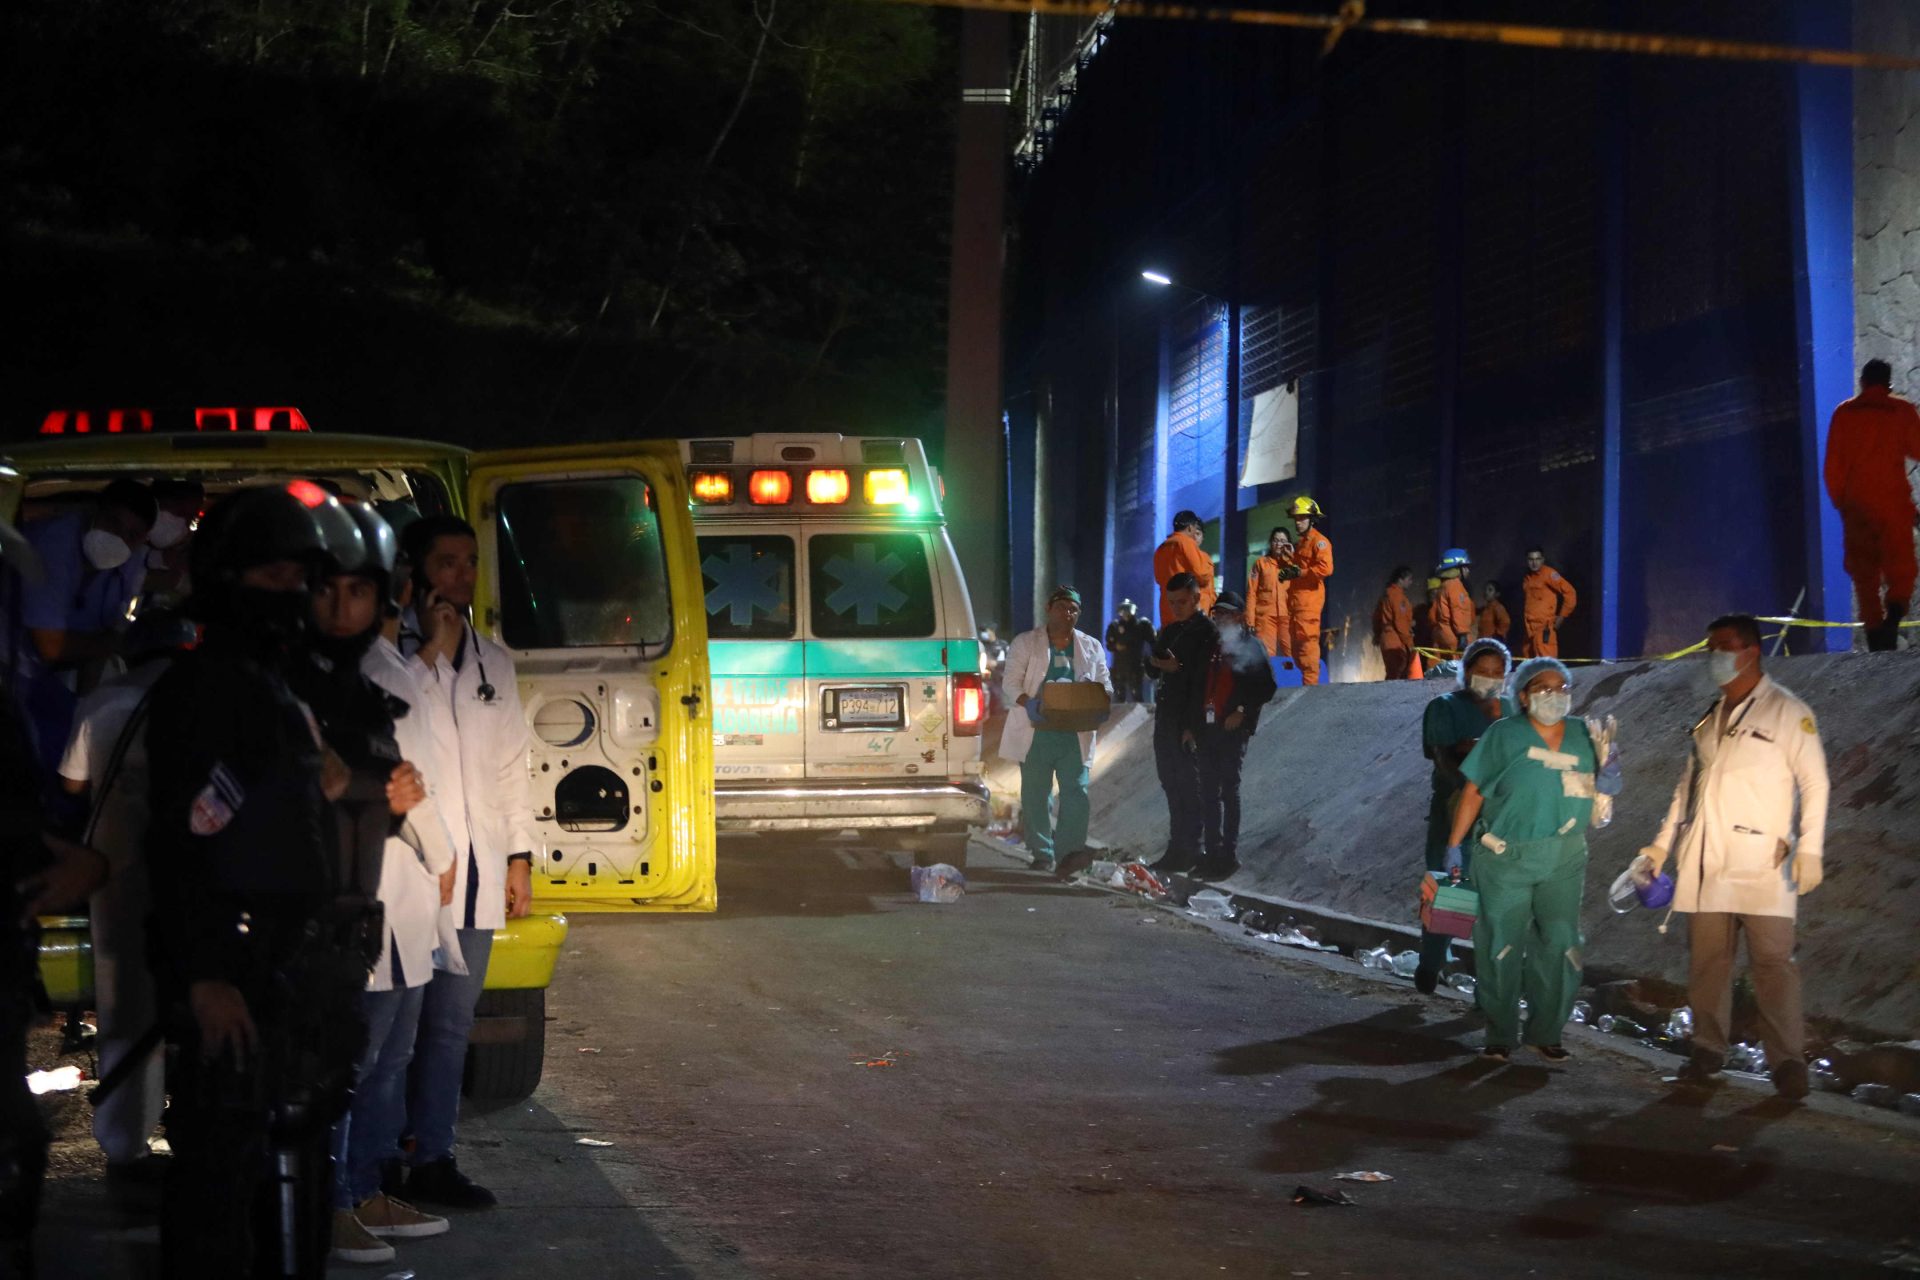 9 people die in a stampede at a stadium in El Salvador
